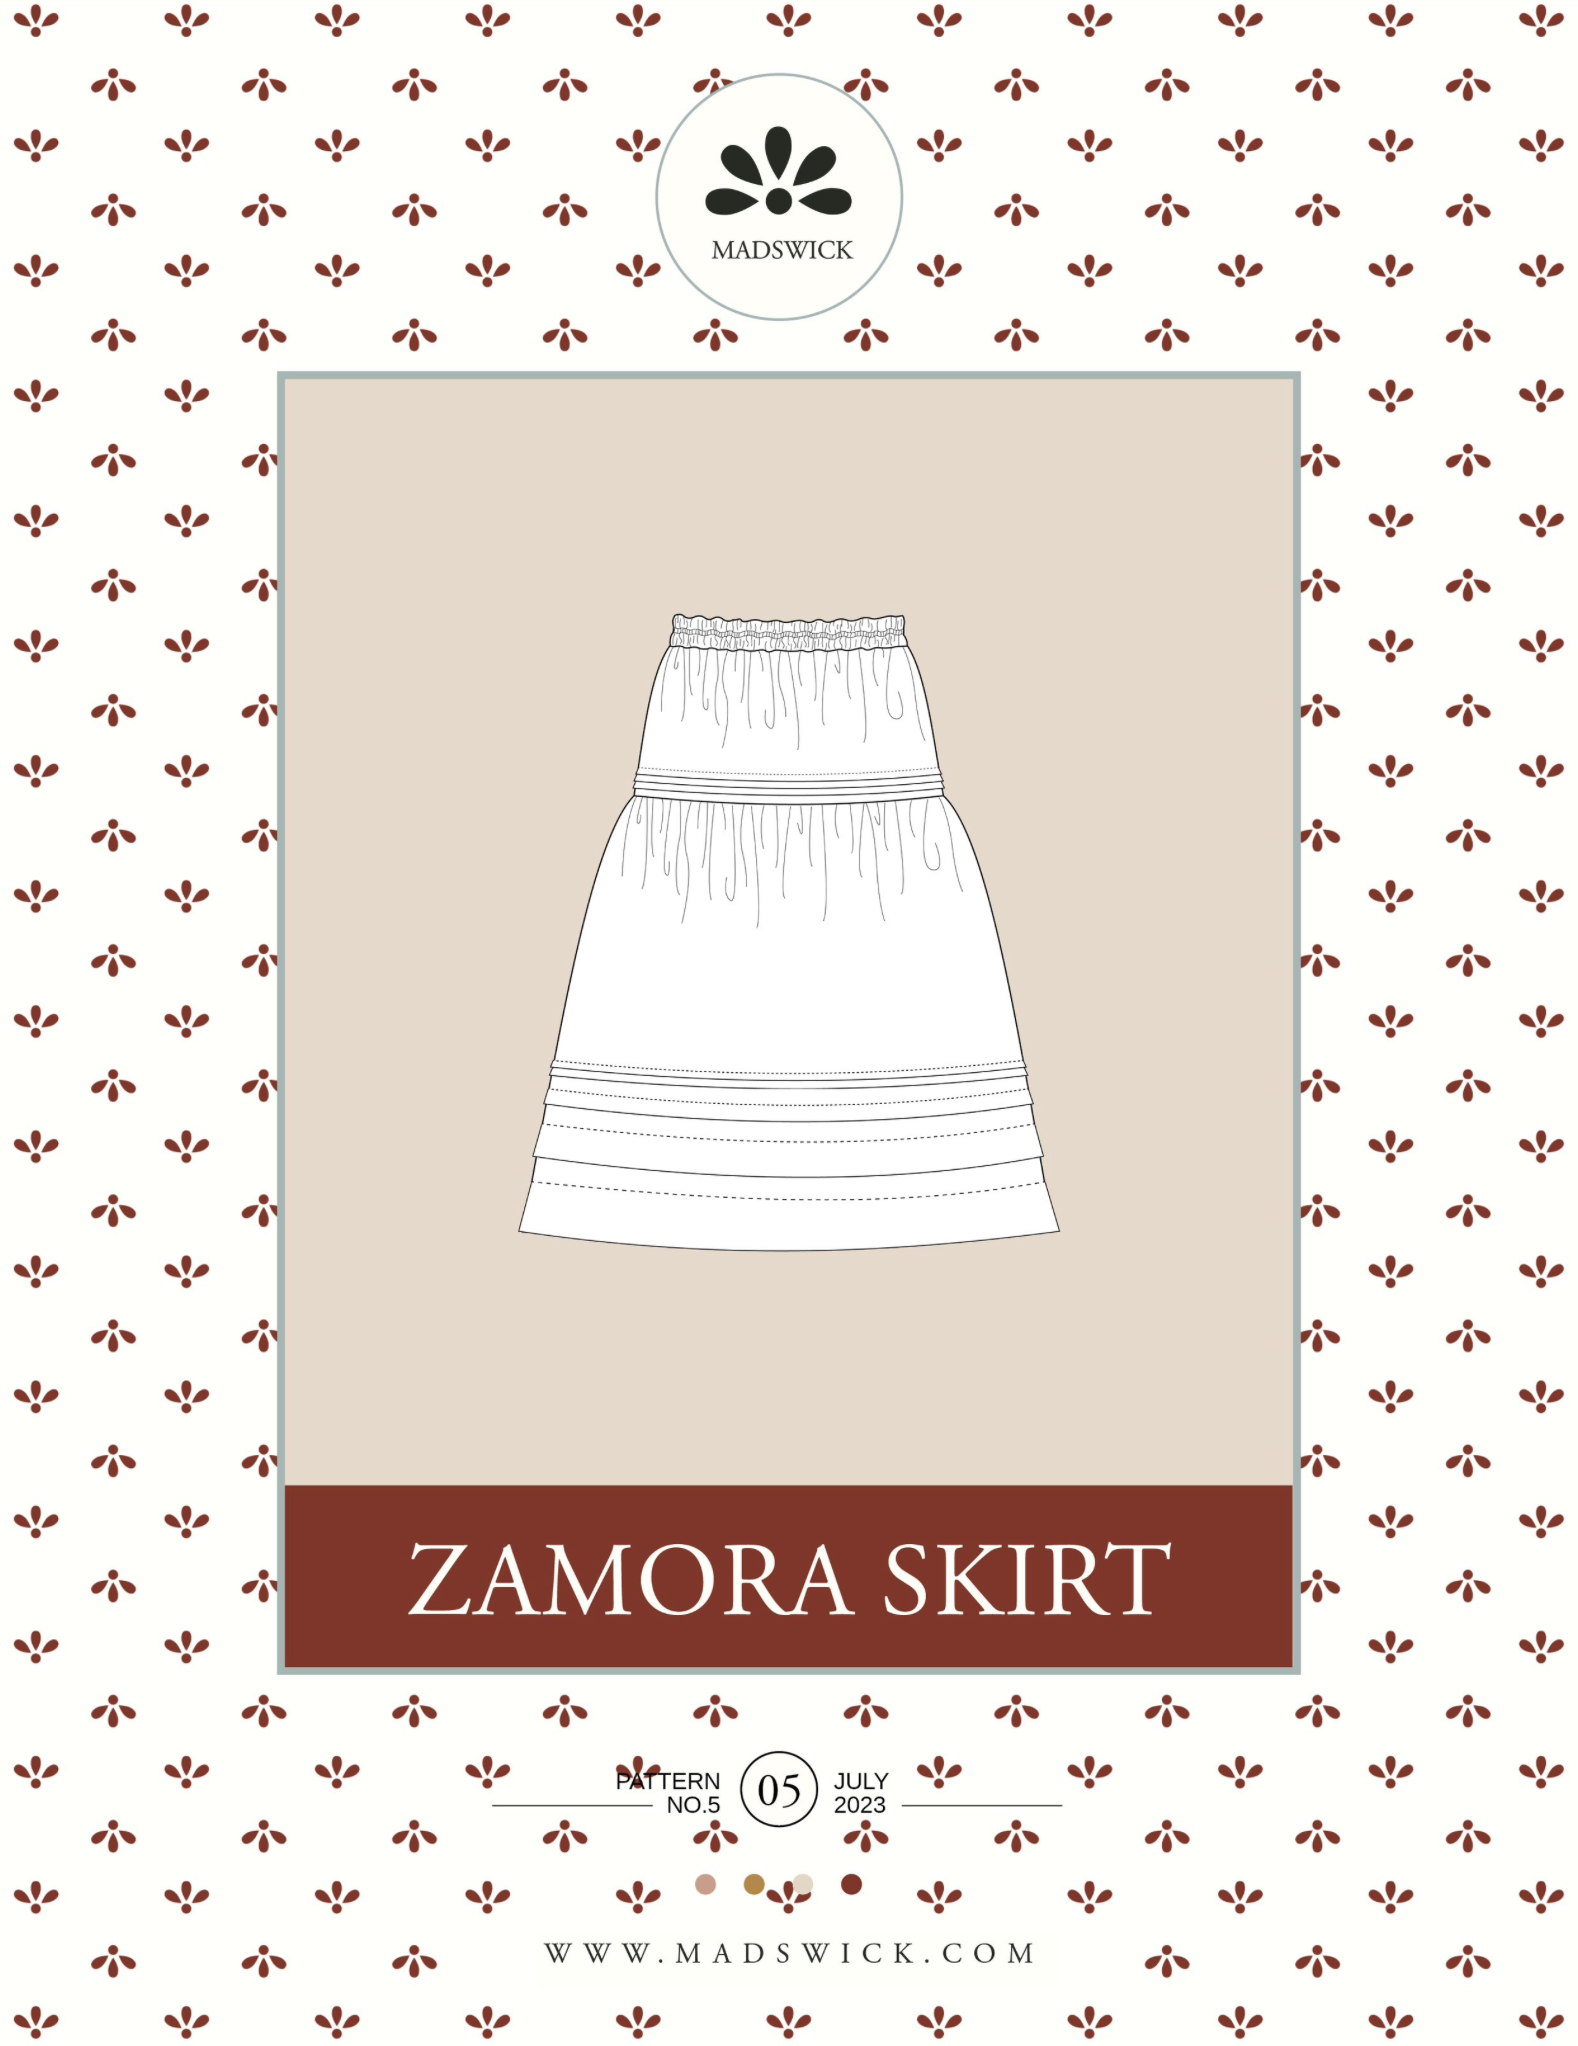 Madswick Zamora Skirt